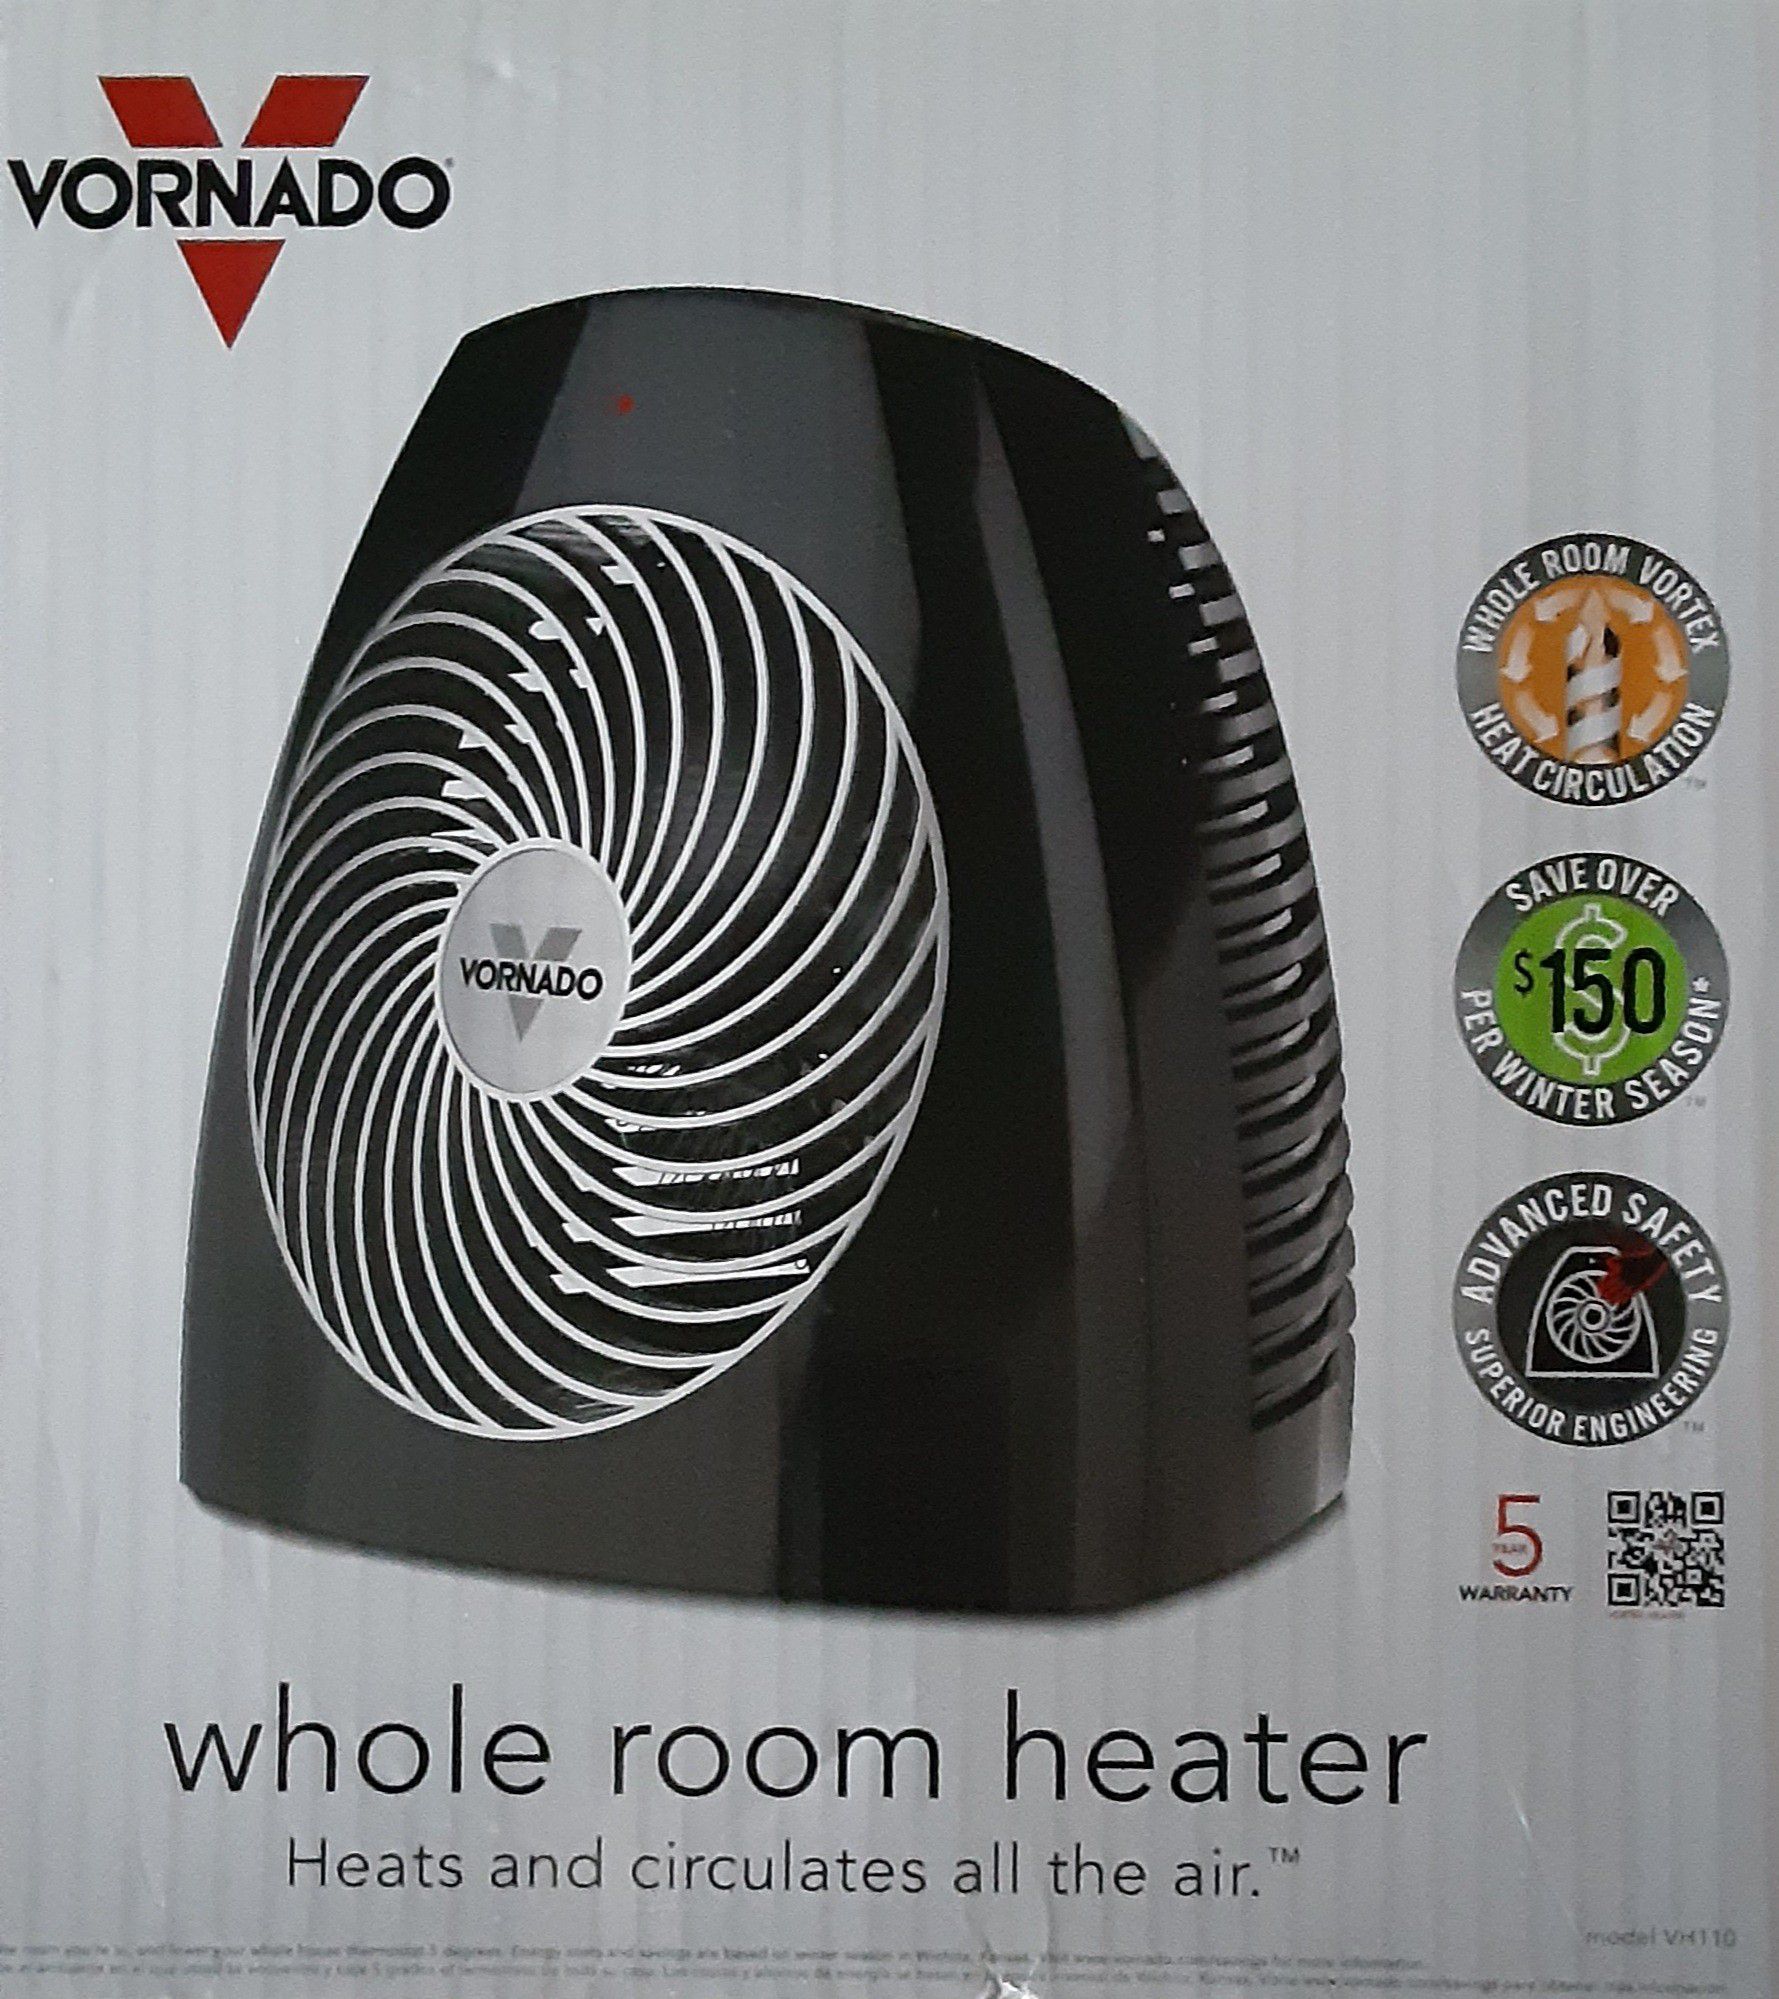 Vornado space heater